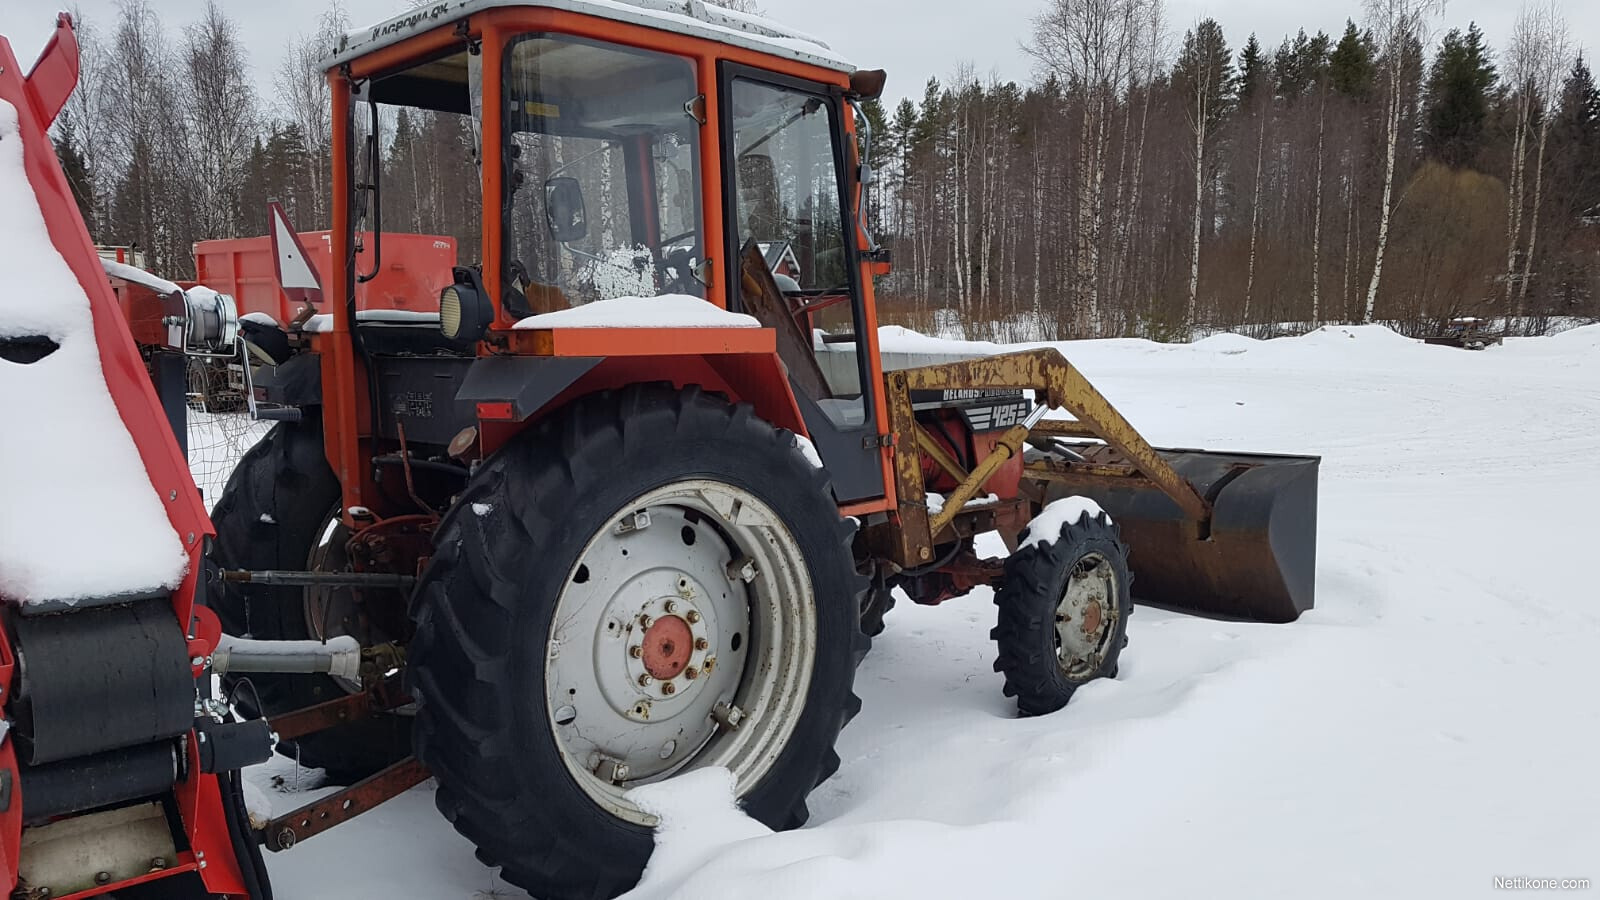 Belarus 425 progress traktorit, 1984 - Nettikone